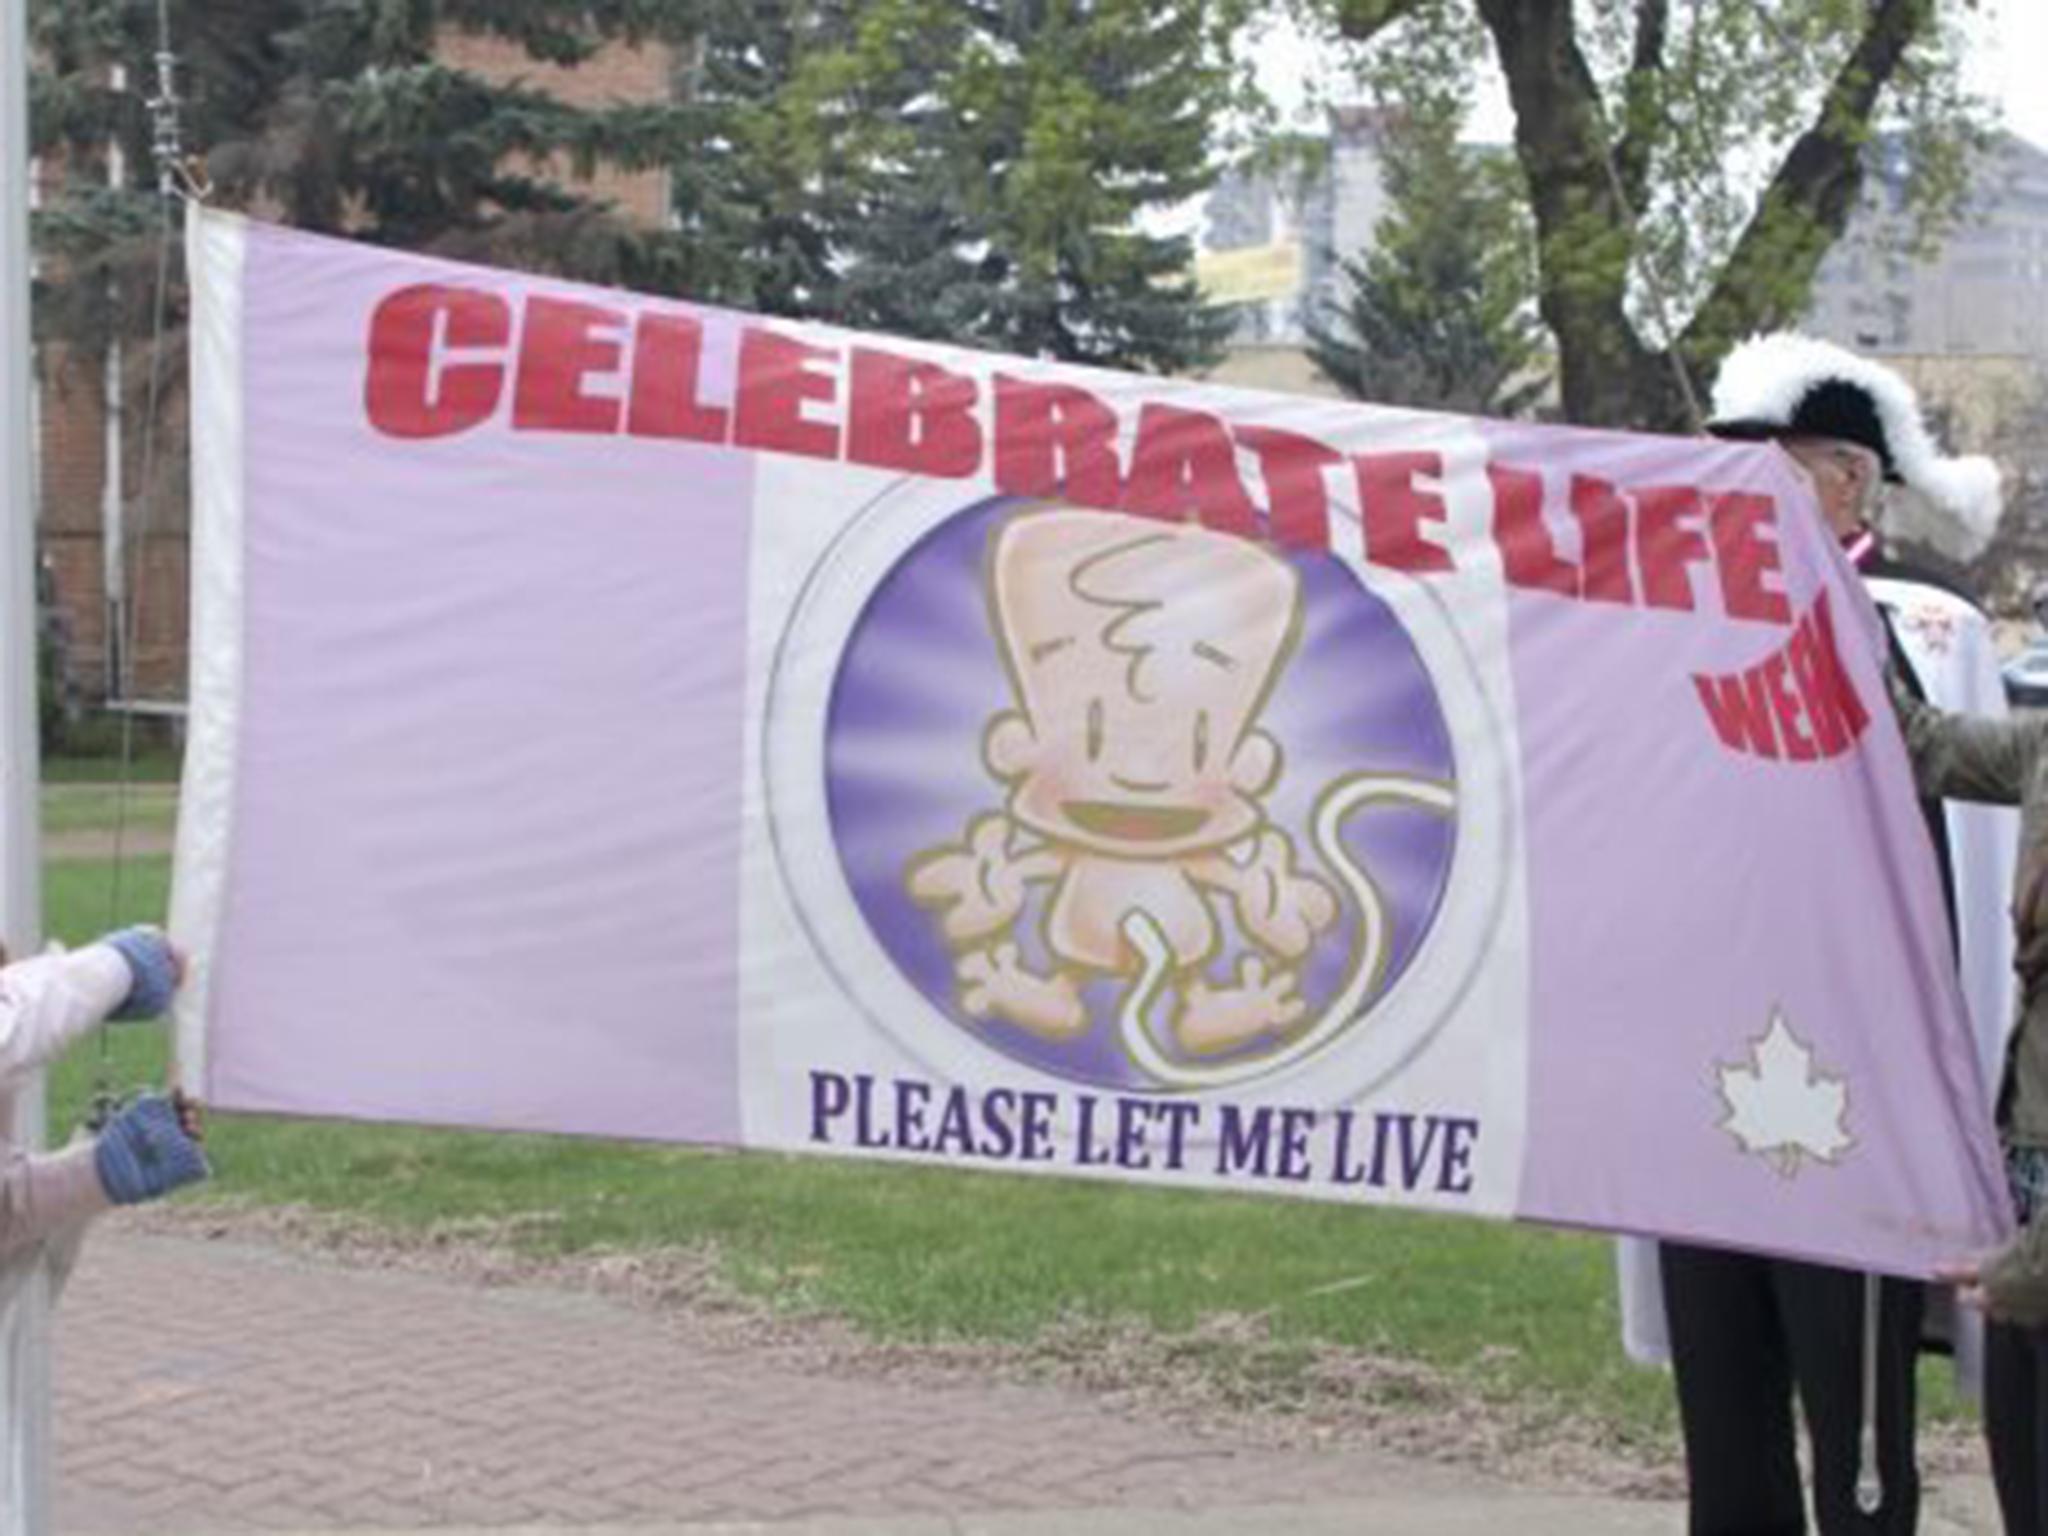 The Celebrate Life Week flag in Prince Albert, Saskachewan